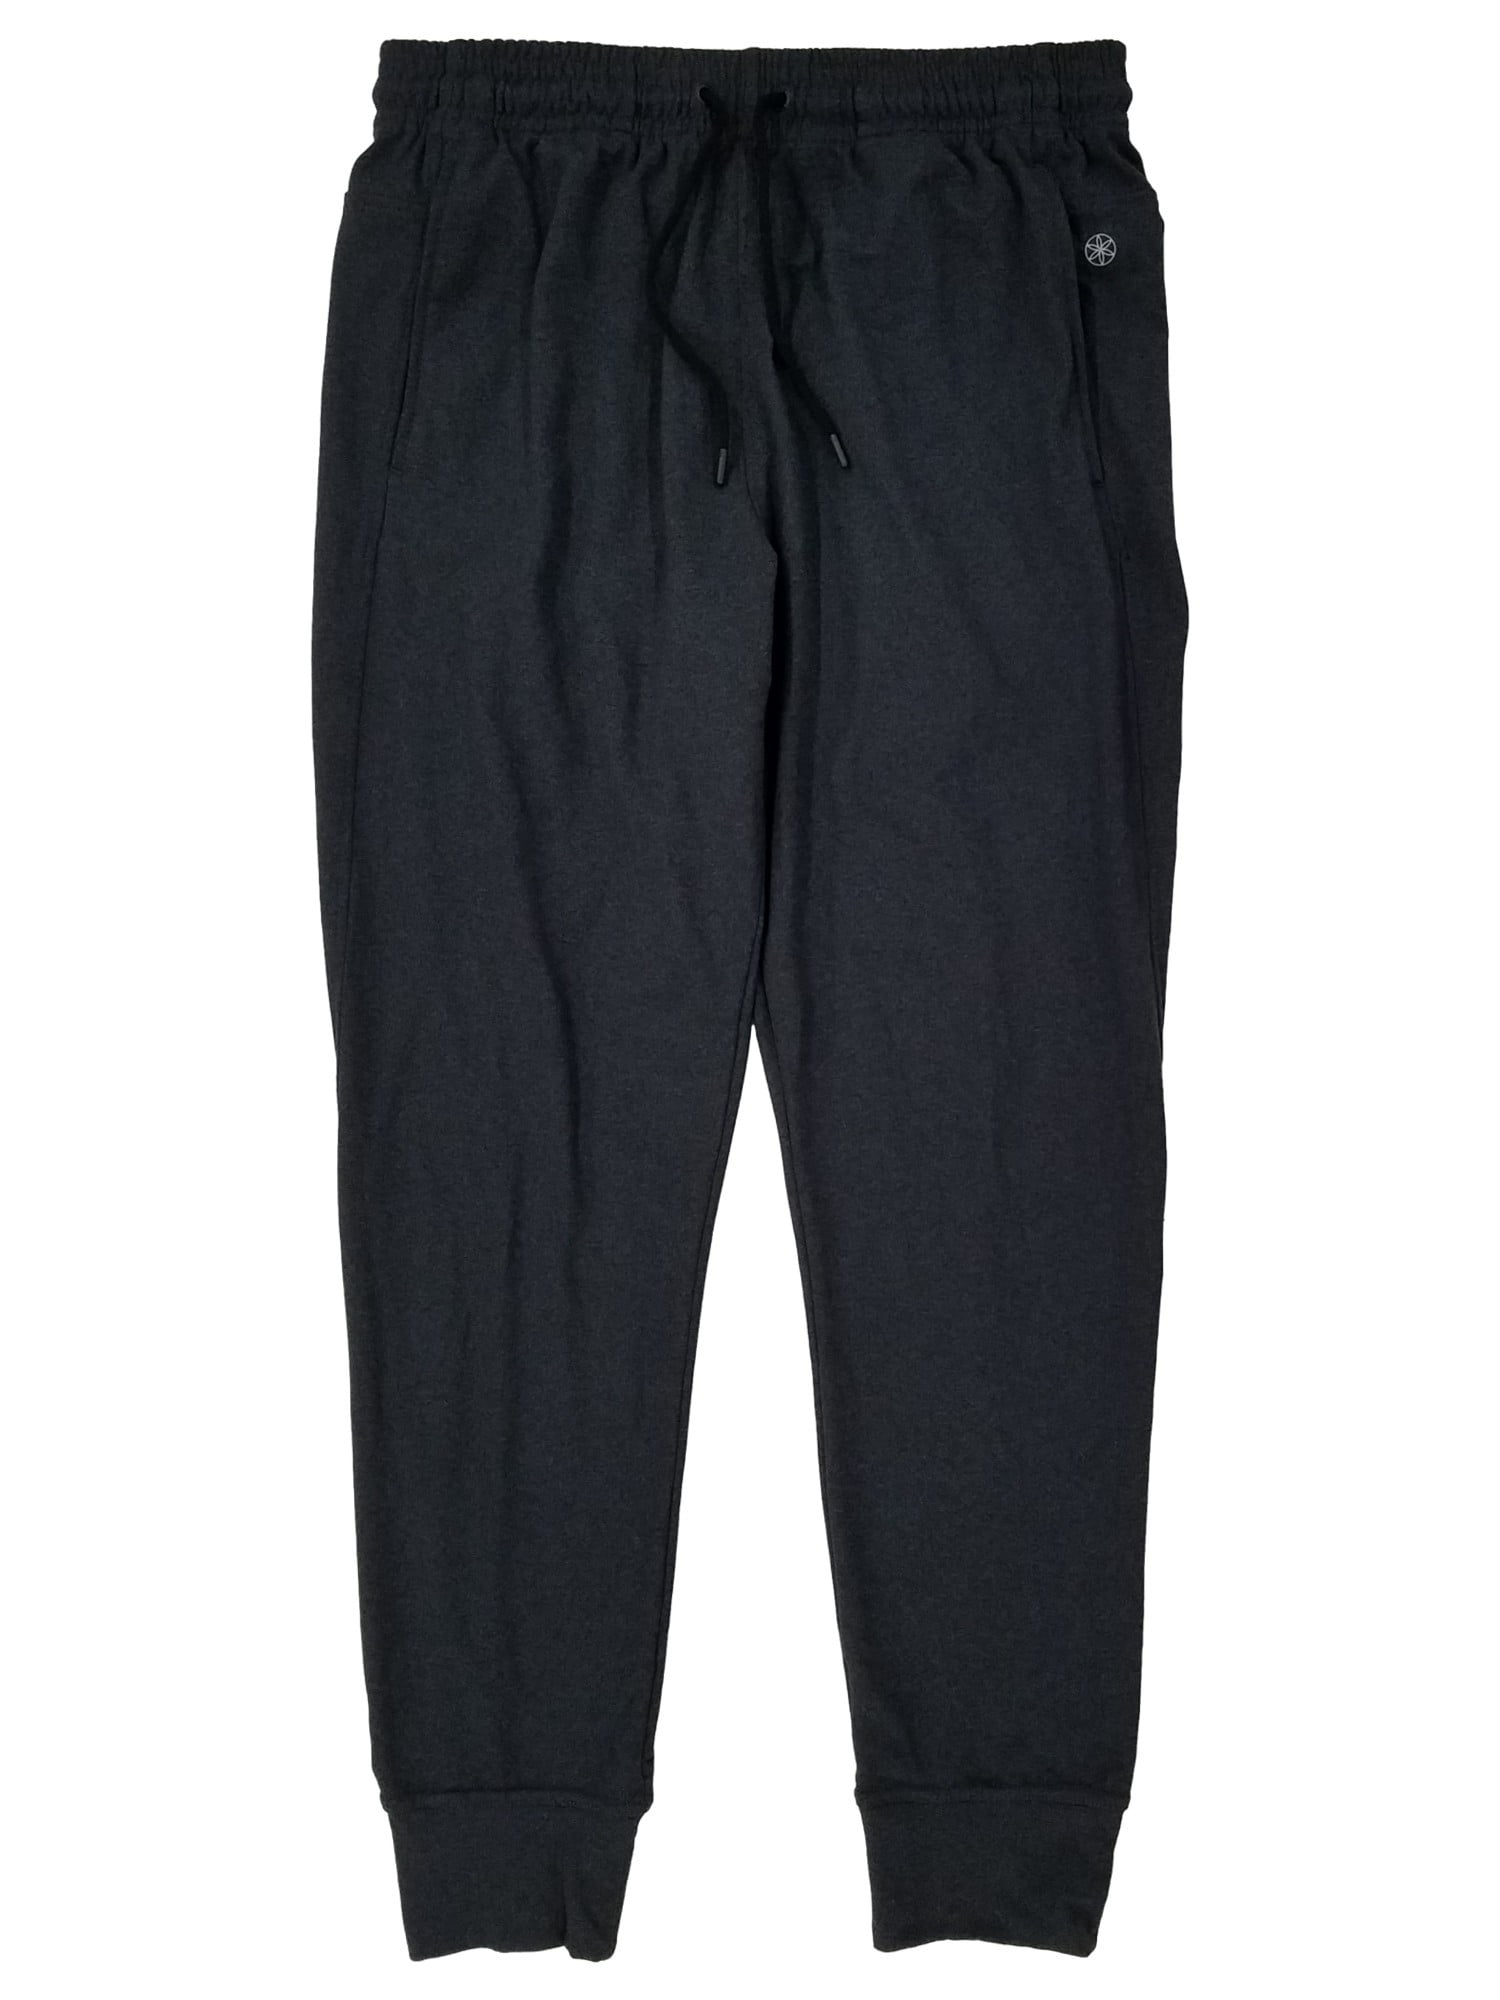 GAIAM Black Active Pants Size XL - 42% off